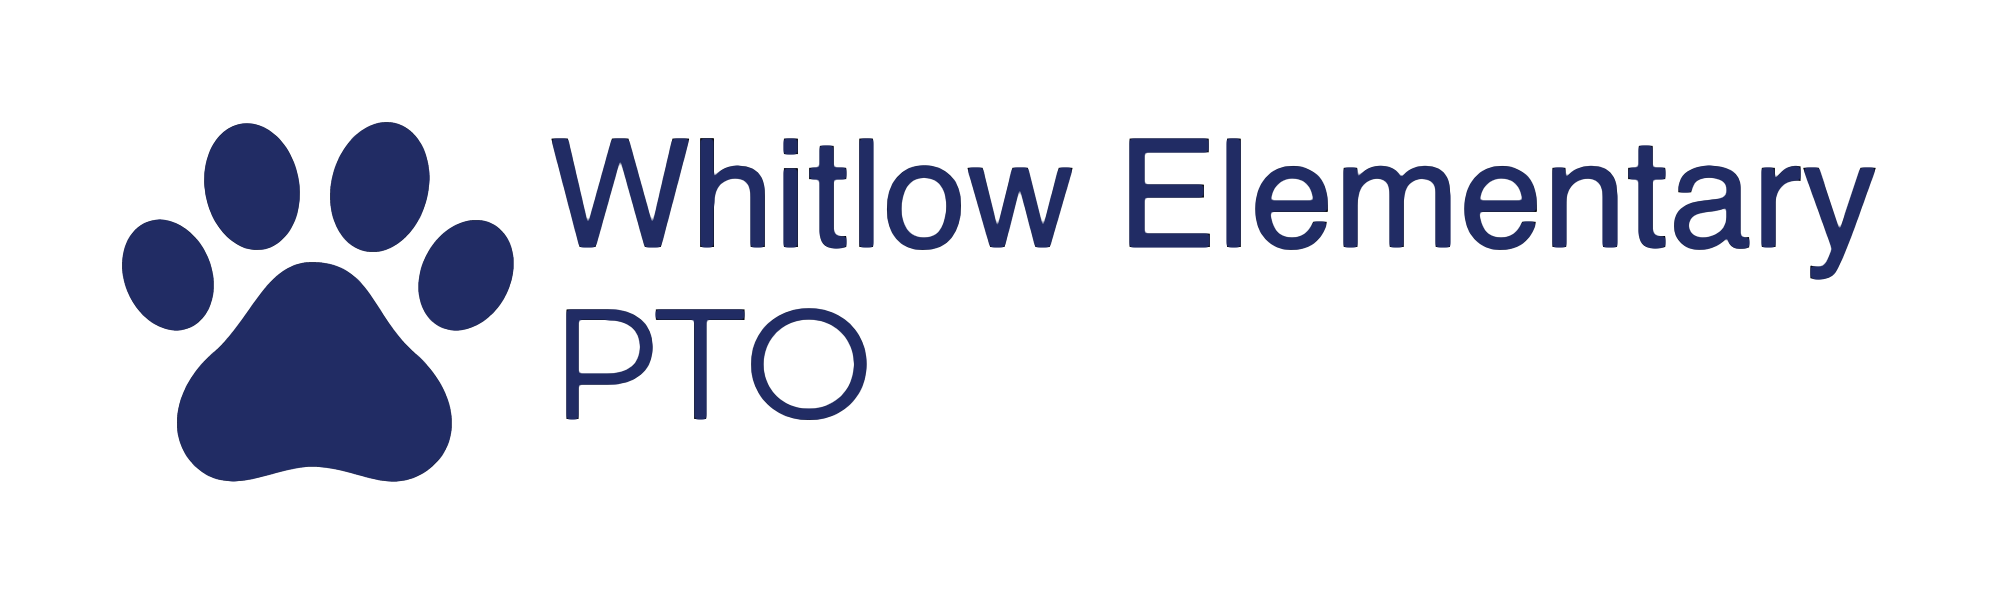 Whitlow Elementary PTO